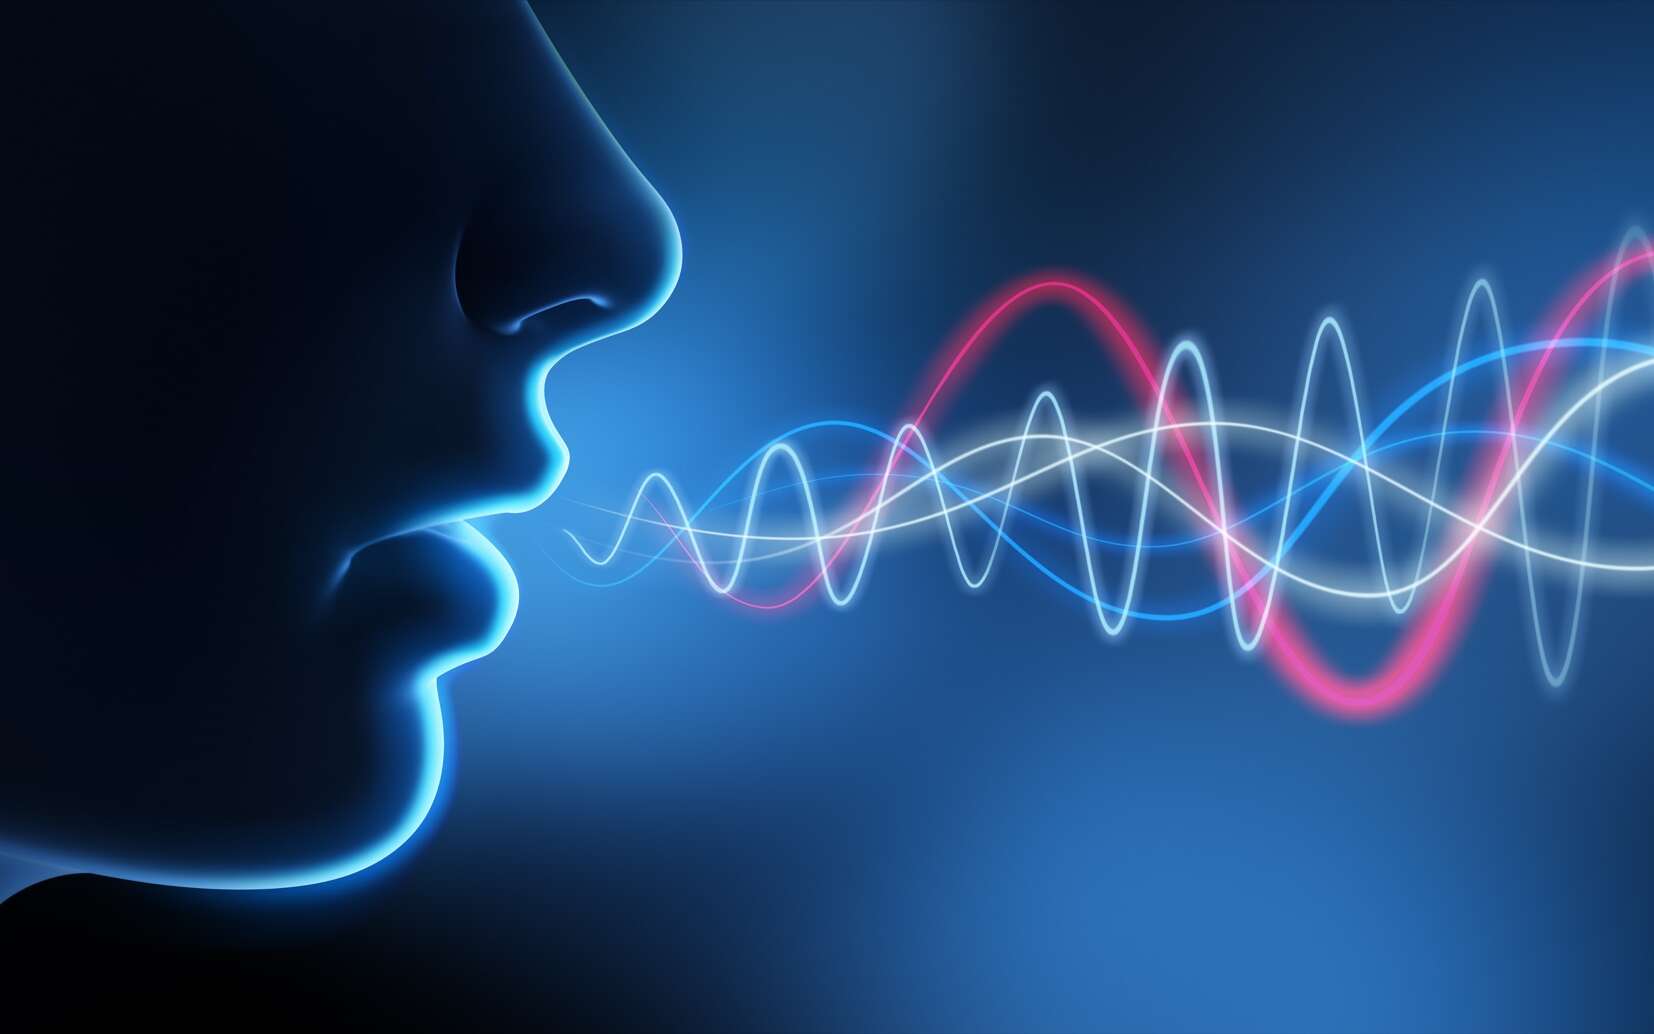 Et si on pouvait redonner la parole aux personnes sans cordes vocales ?